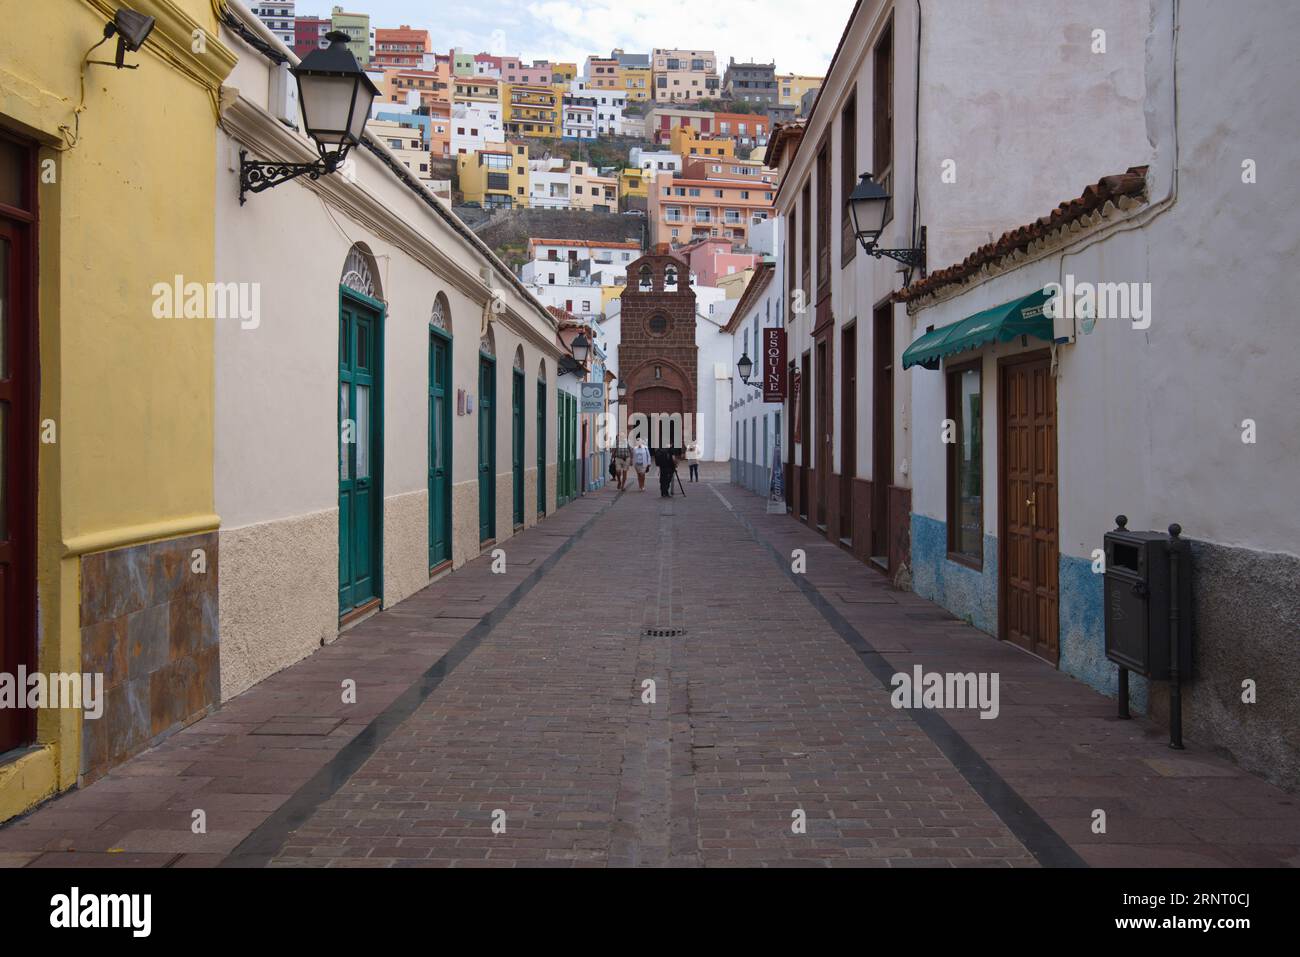 A typical street in San Sebastián de La Gomera, Canary Islands. Una calle típica de San Sebastián de La Gomera, Islas Canarias. Stock Photo